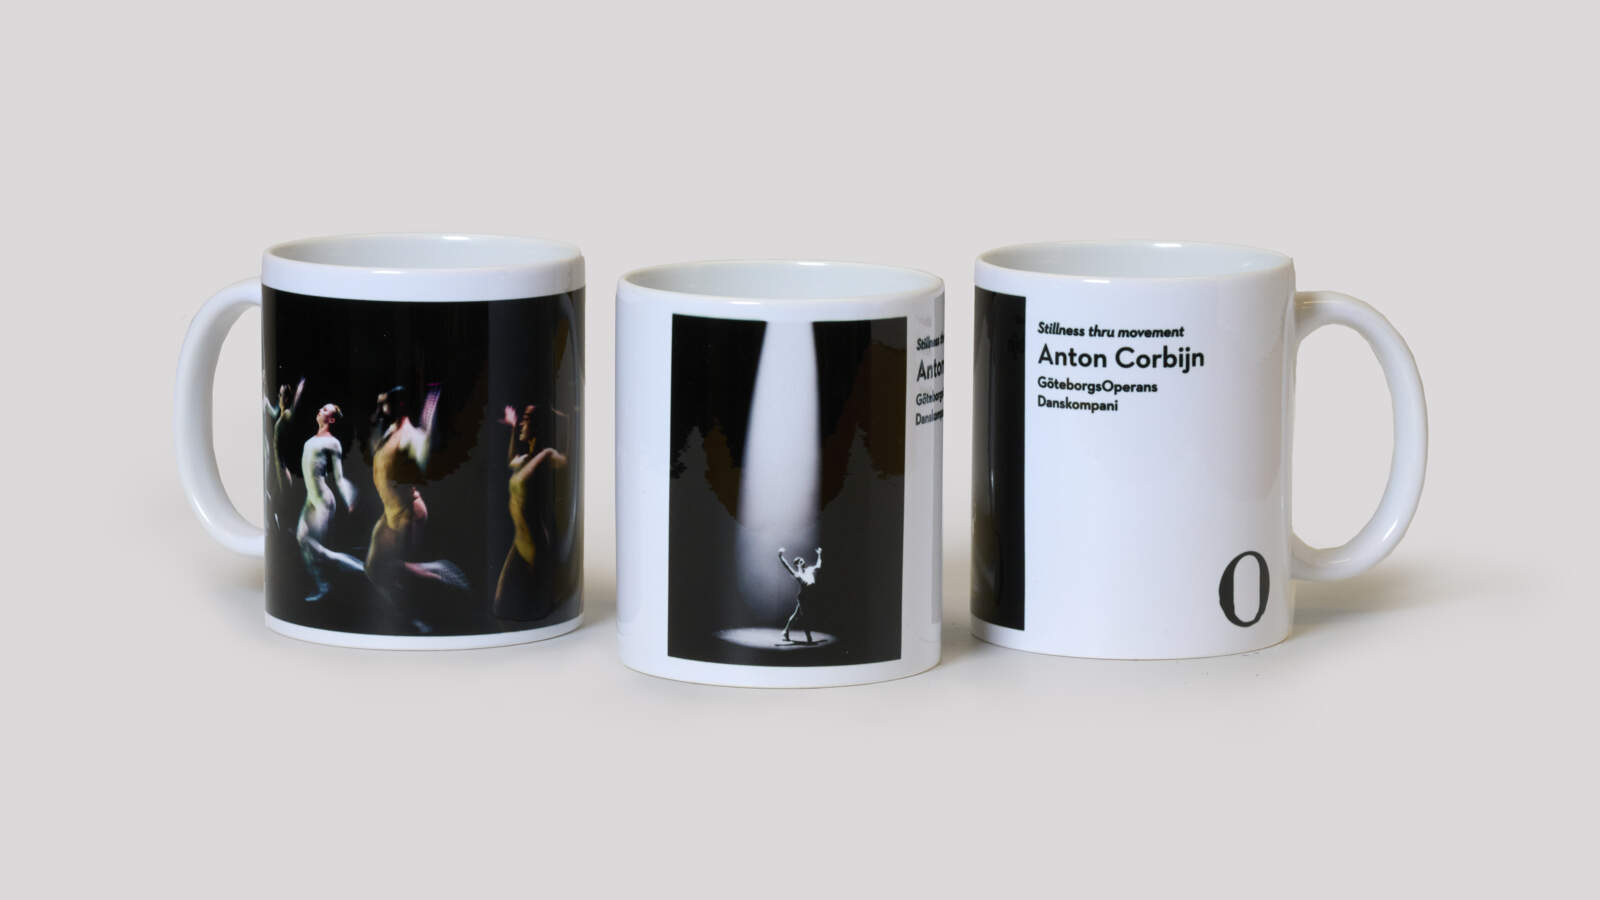 Tre kaffemuggar med fotomotiv ur Anton Corbijns utställning Stillness thru movement.